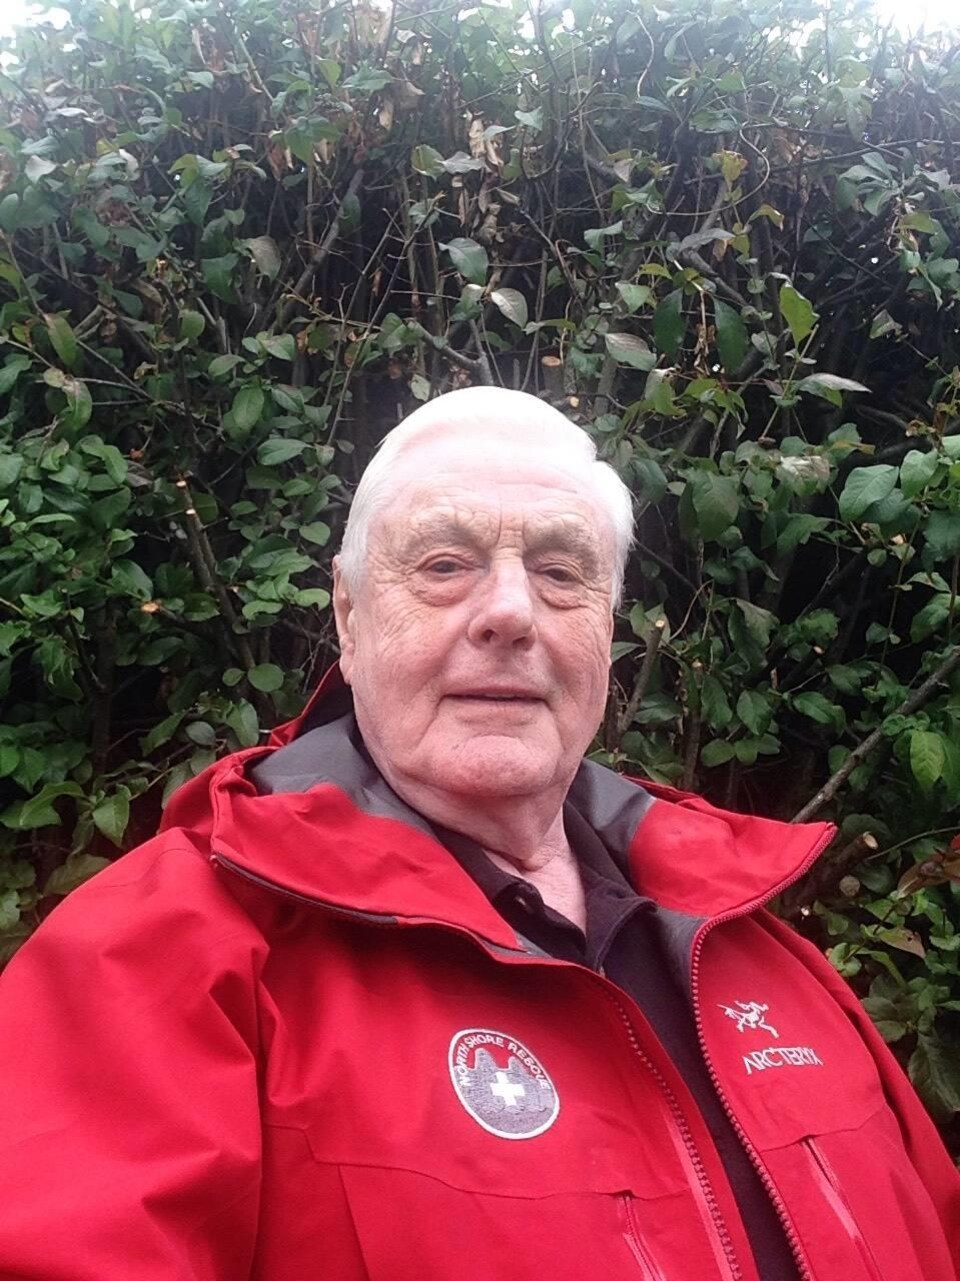 Un homme âgée portant un manteau rouge.